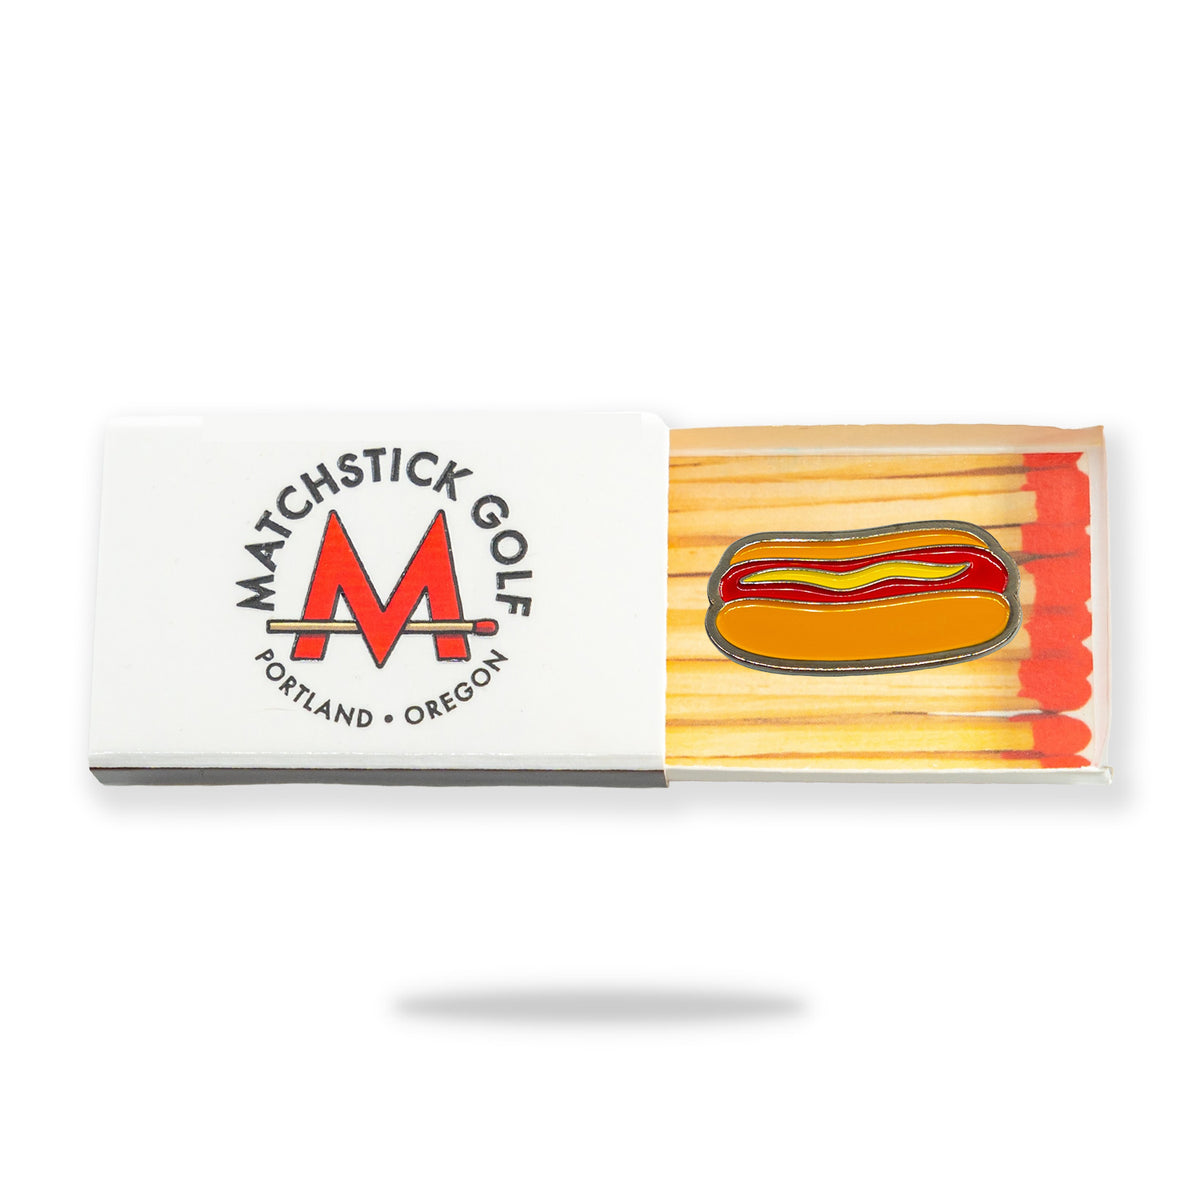 hot dog glizzy golf ball marker matchbox packaging